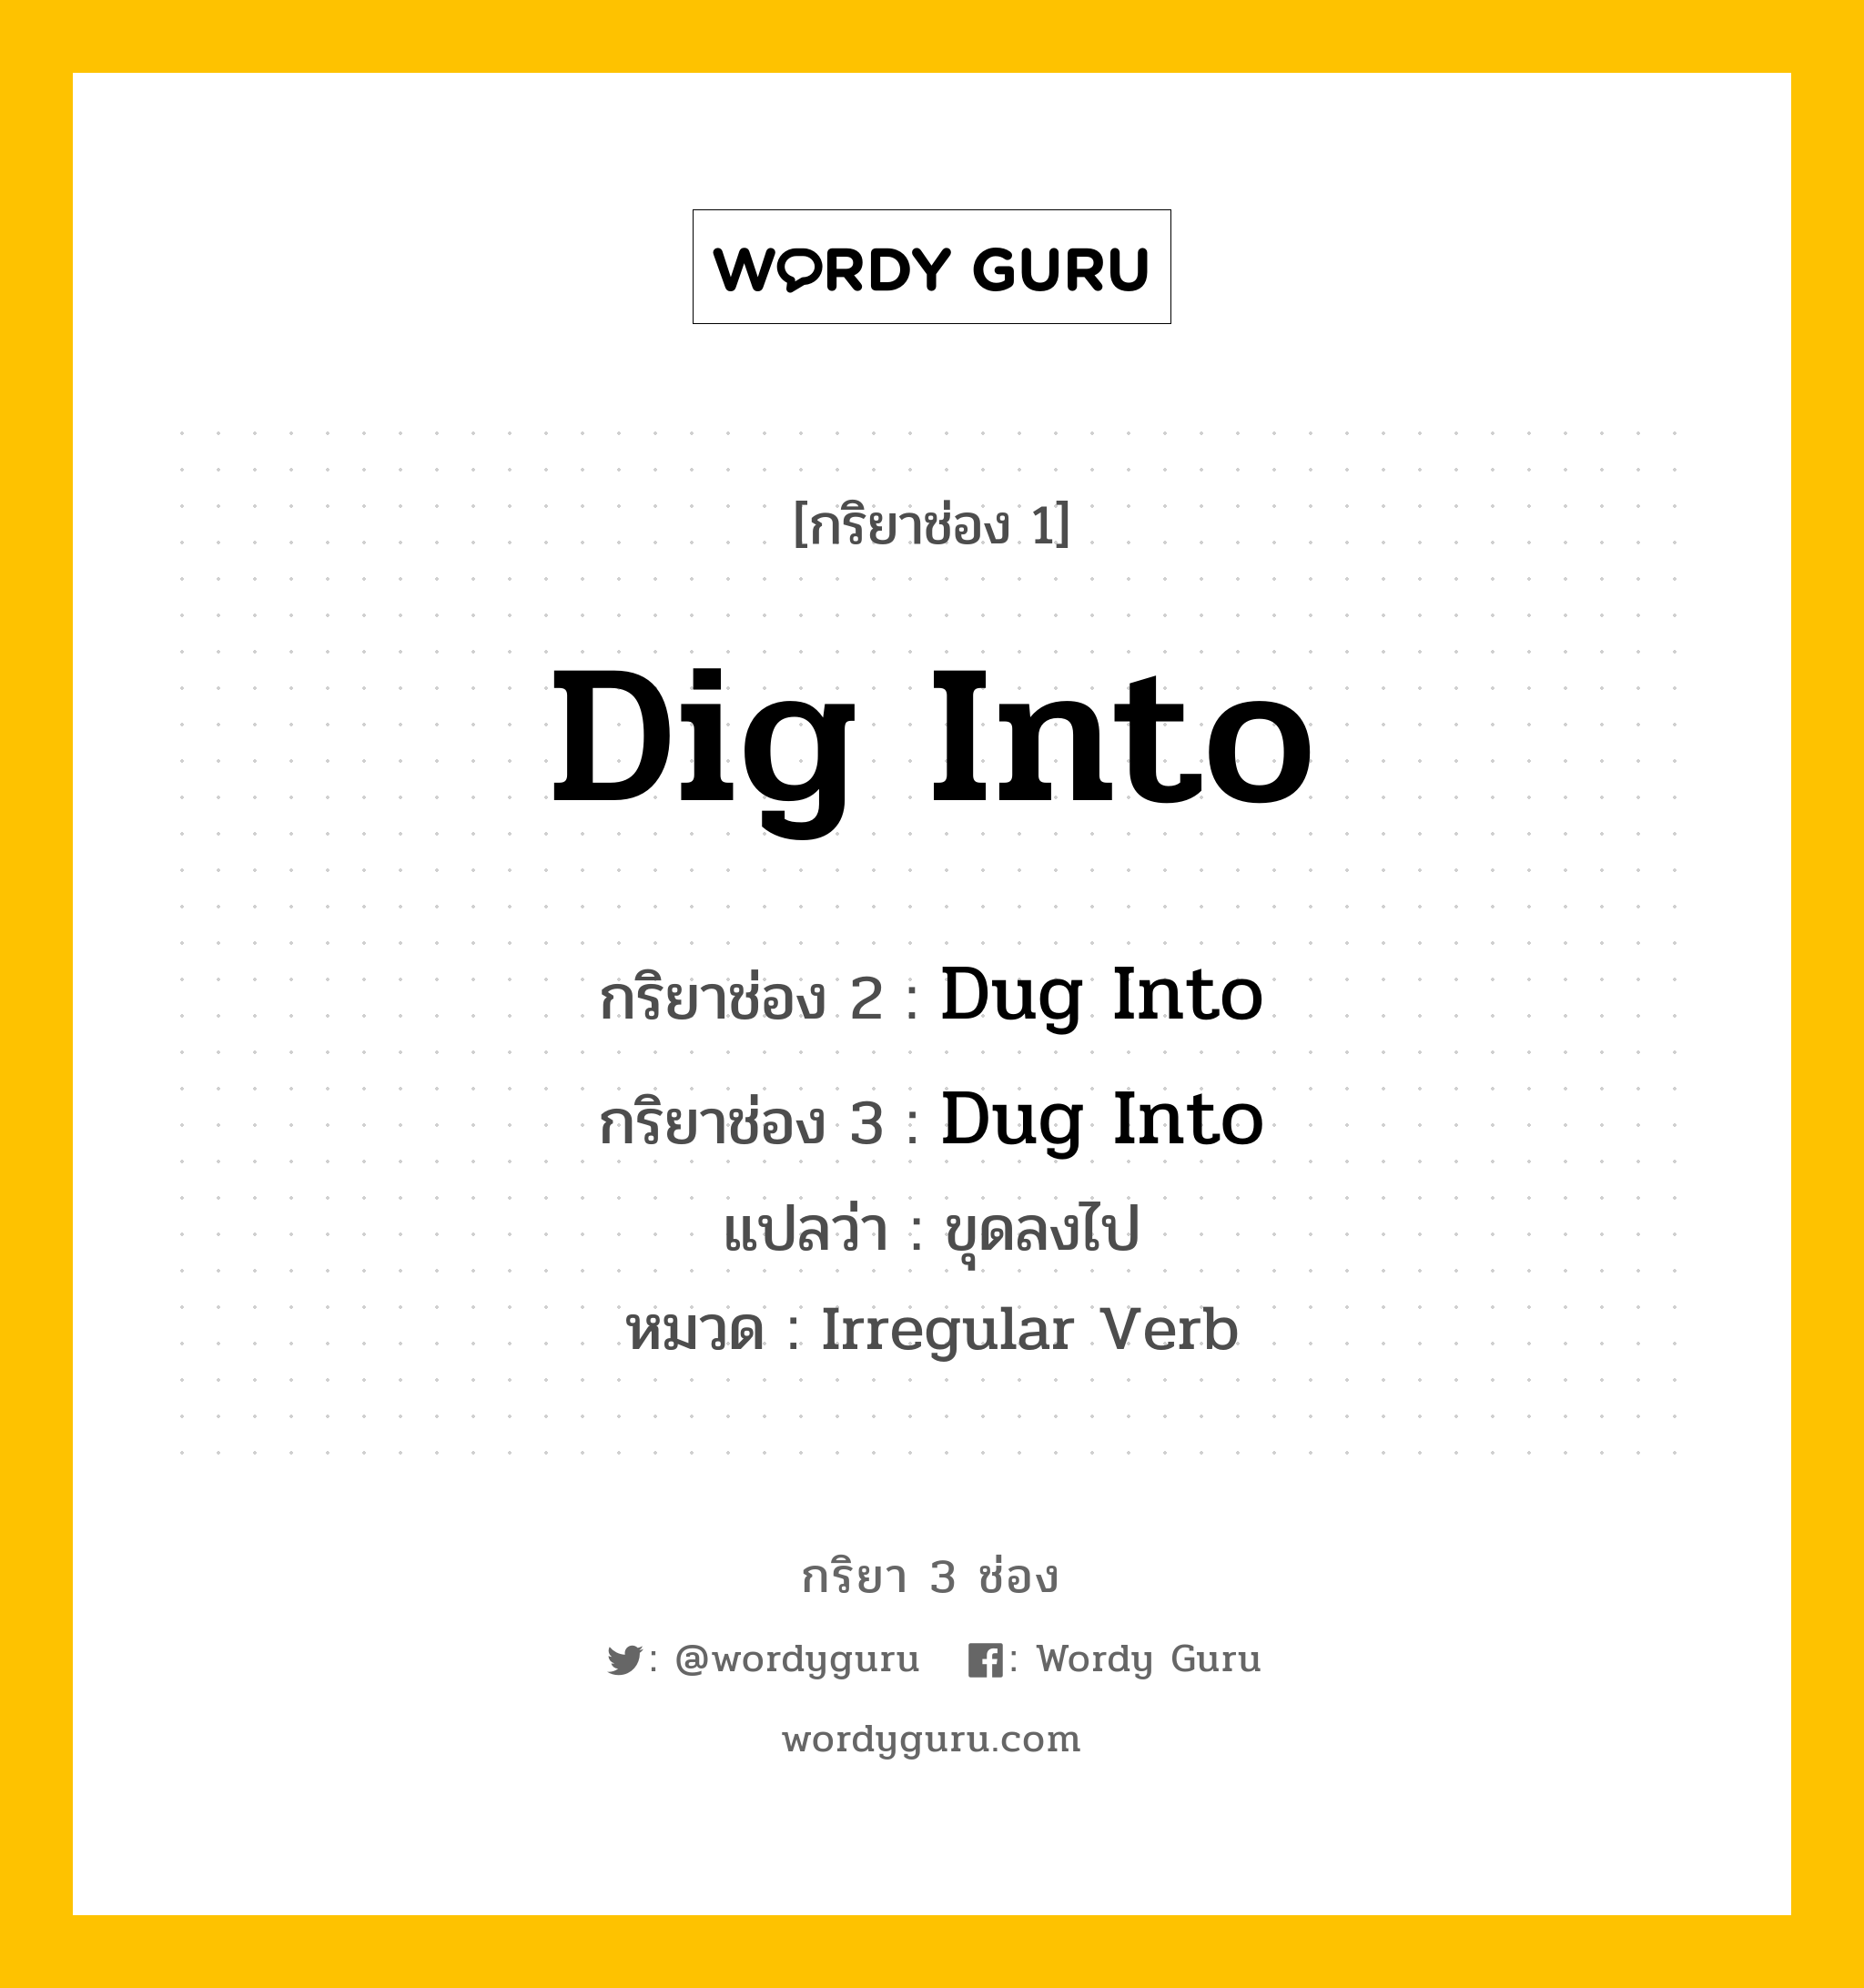 Dig Into มีกริยา 3 ช่องอะไรบ้าง? คำศัพท์ในกลุ่มประเภท Irregular Verb, กริยาช่อง 1 Dig Into กริยาช่อง 2 Dug Into กริยาช่อง 3 Dug Into แปลว่า ขุดลงไป หมวด Irregular Verb หมวด Irregular Verb